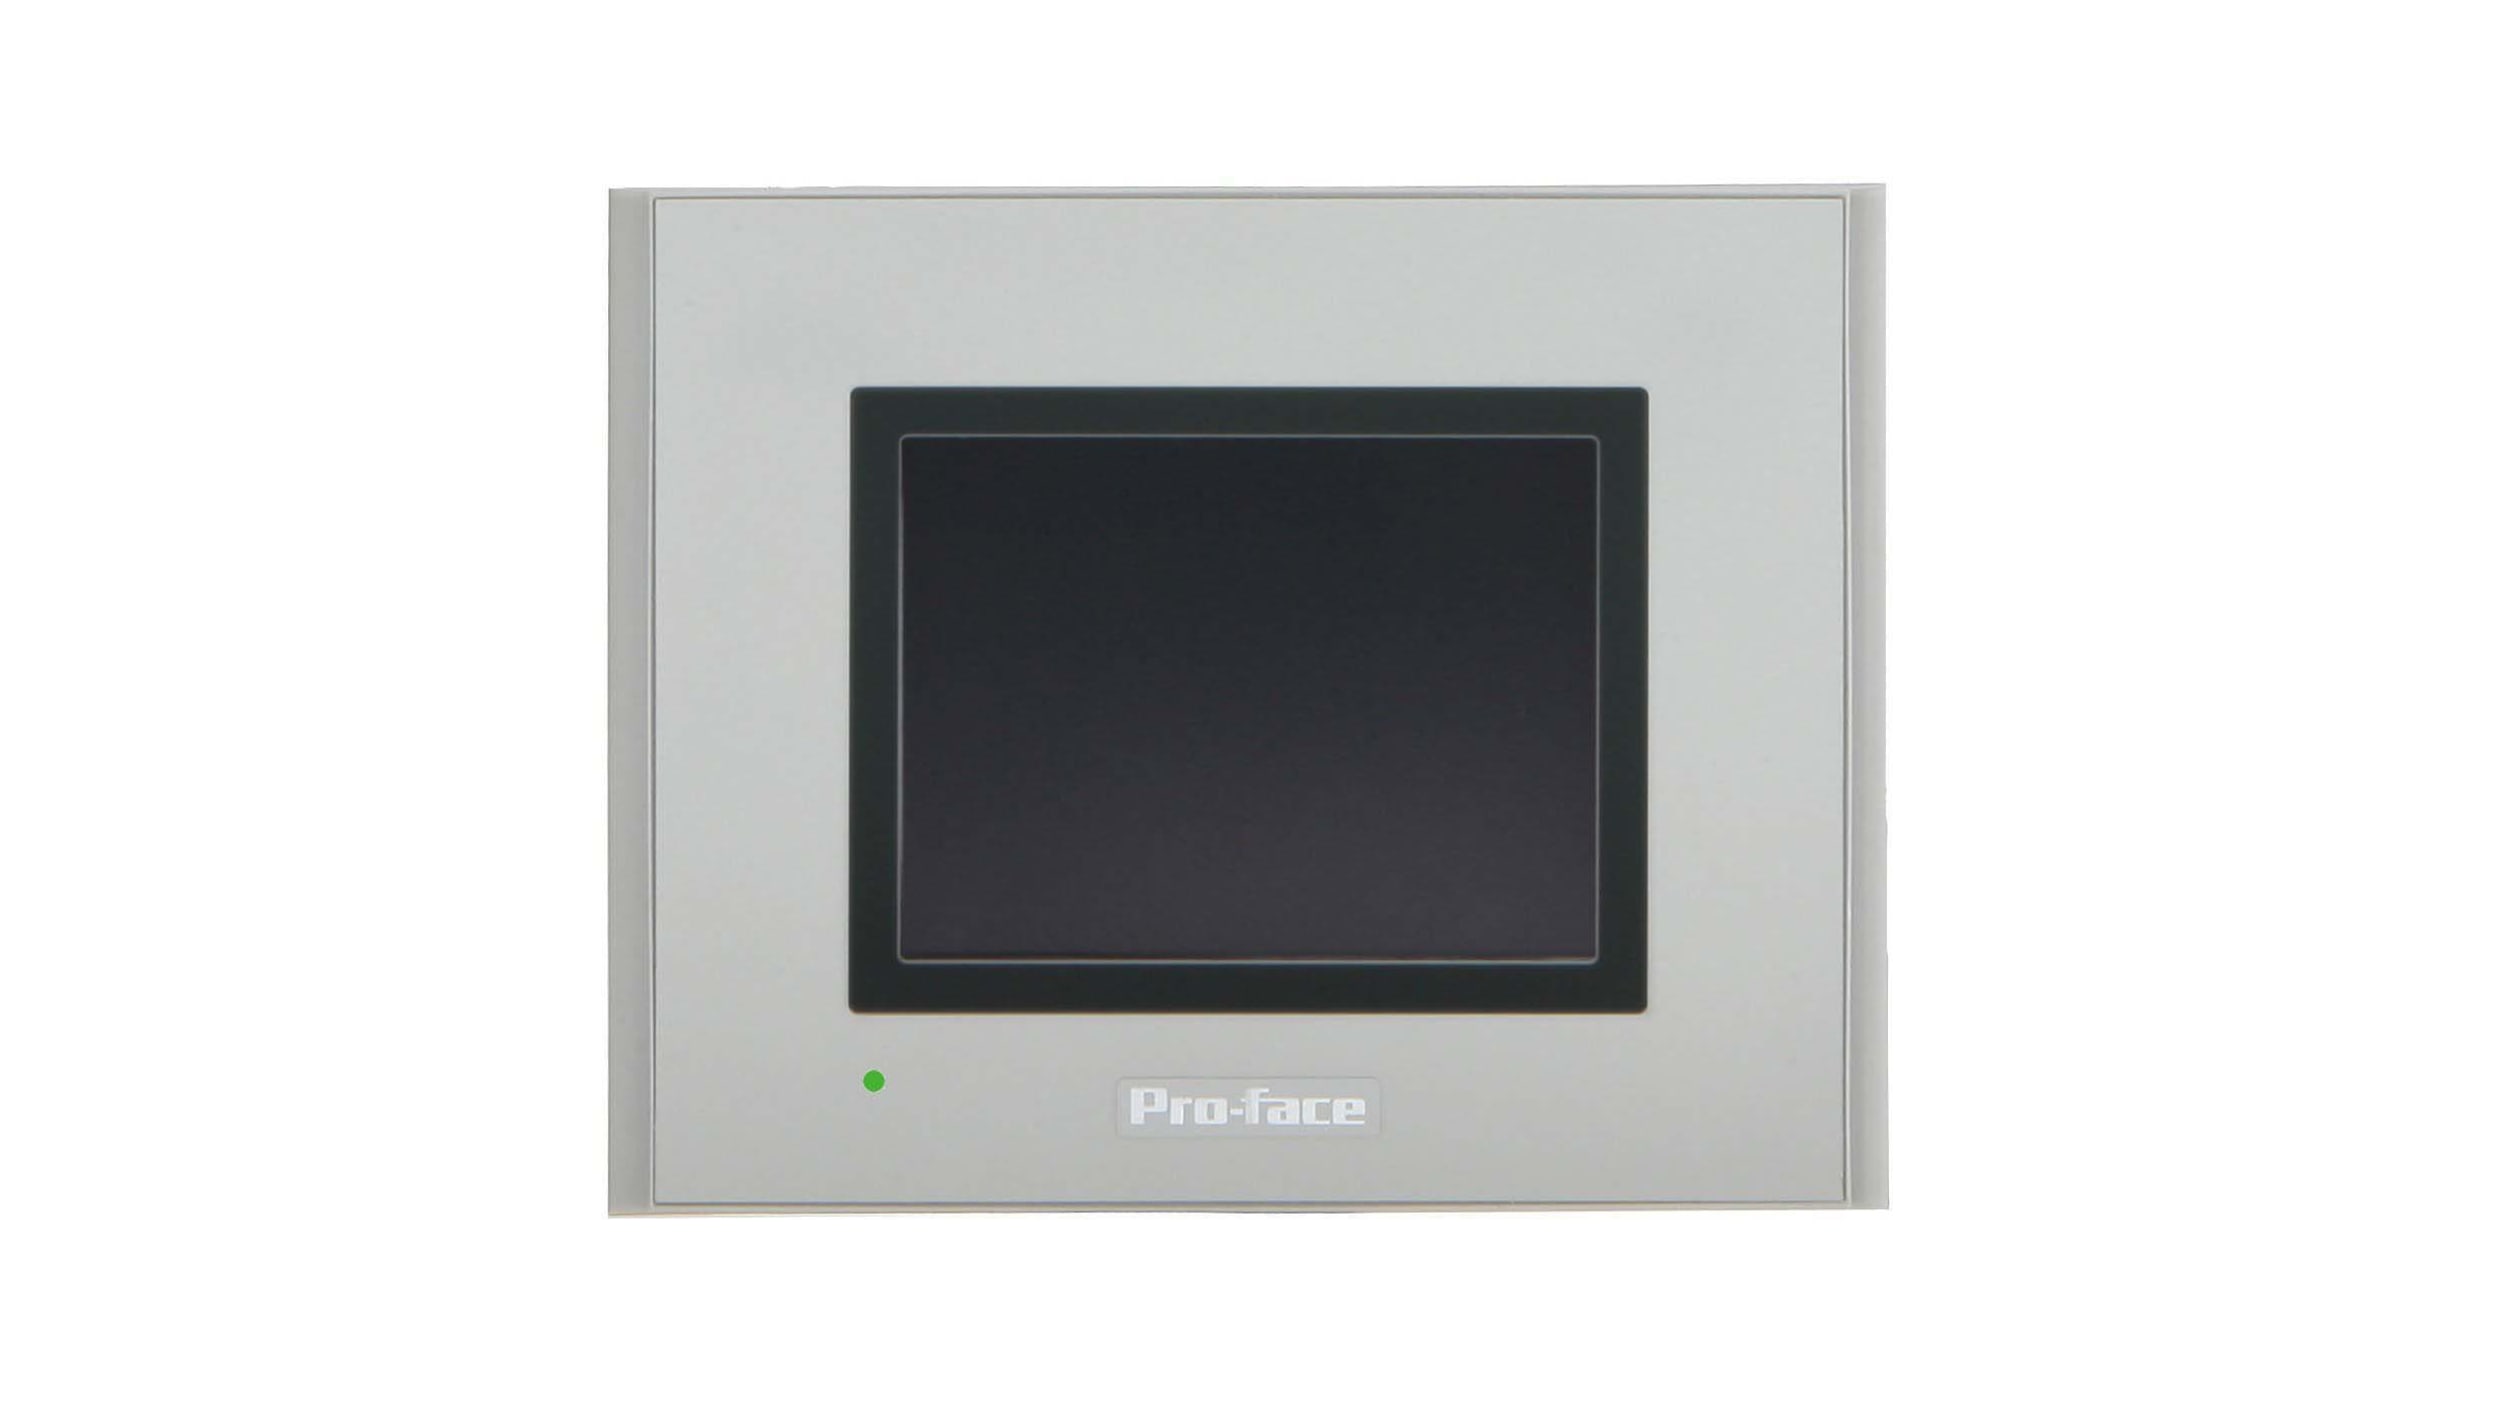 Pro-face タッチパネル ディスプレイ サイズ：7インチ, GP4000シリーズ